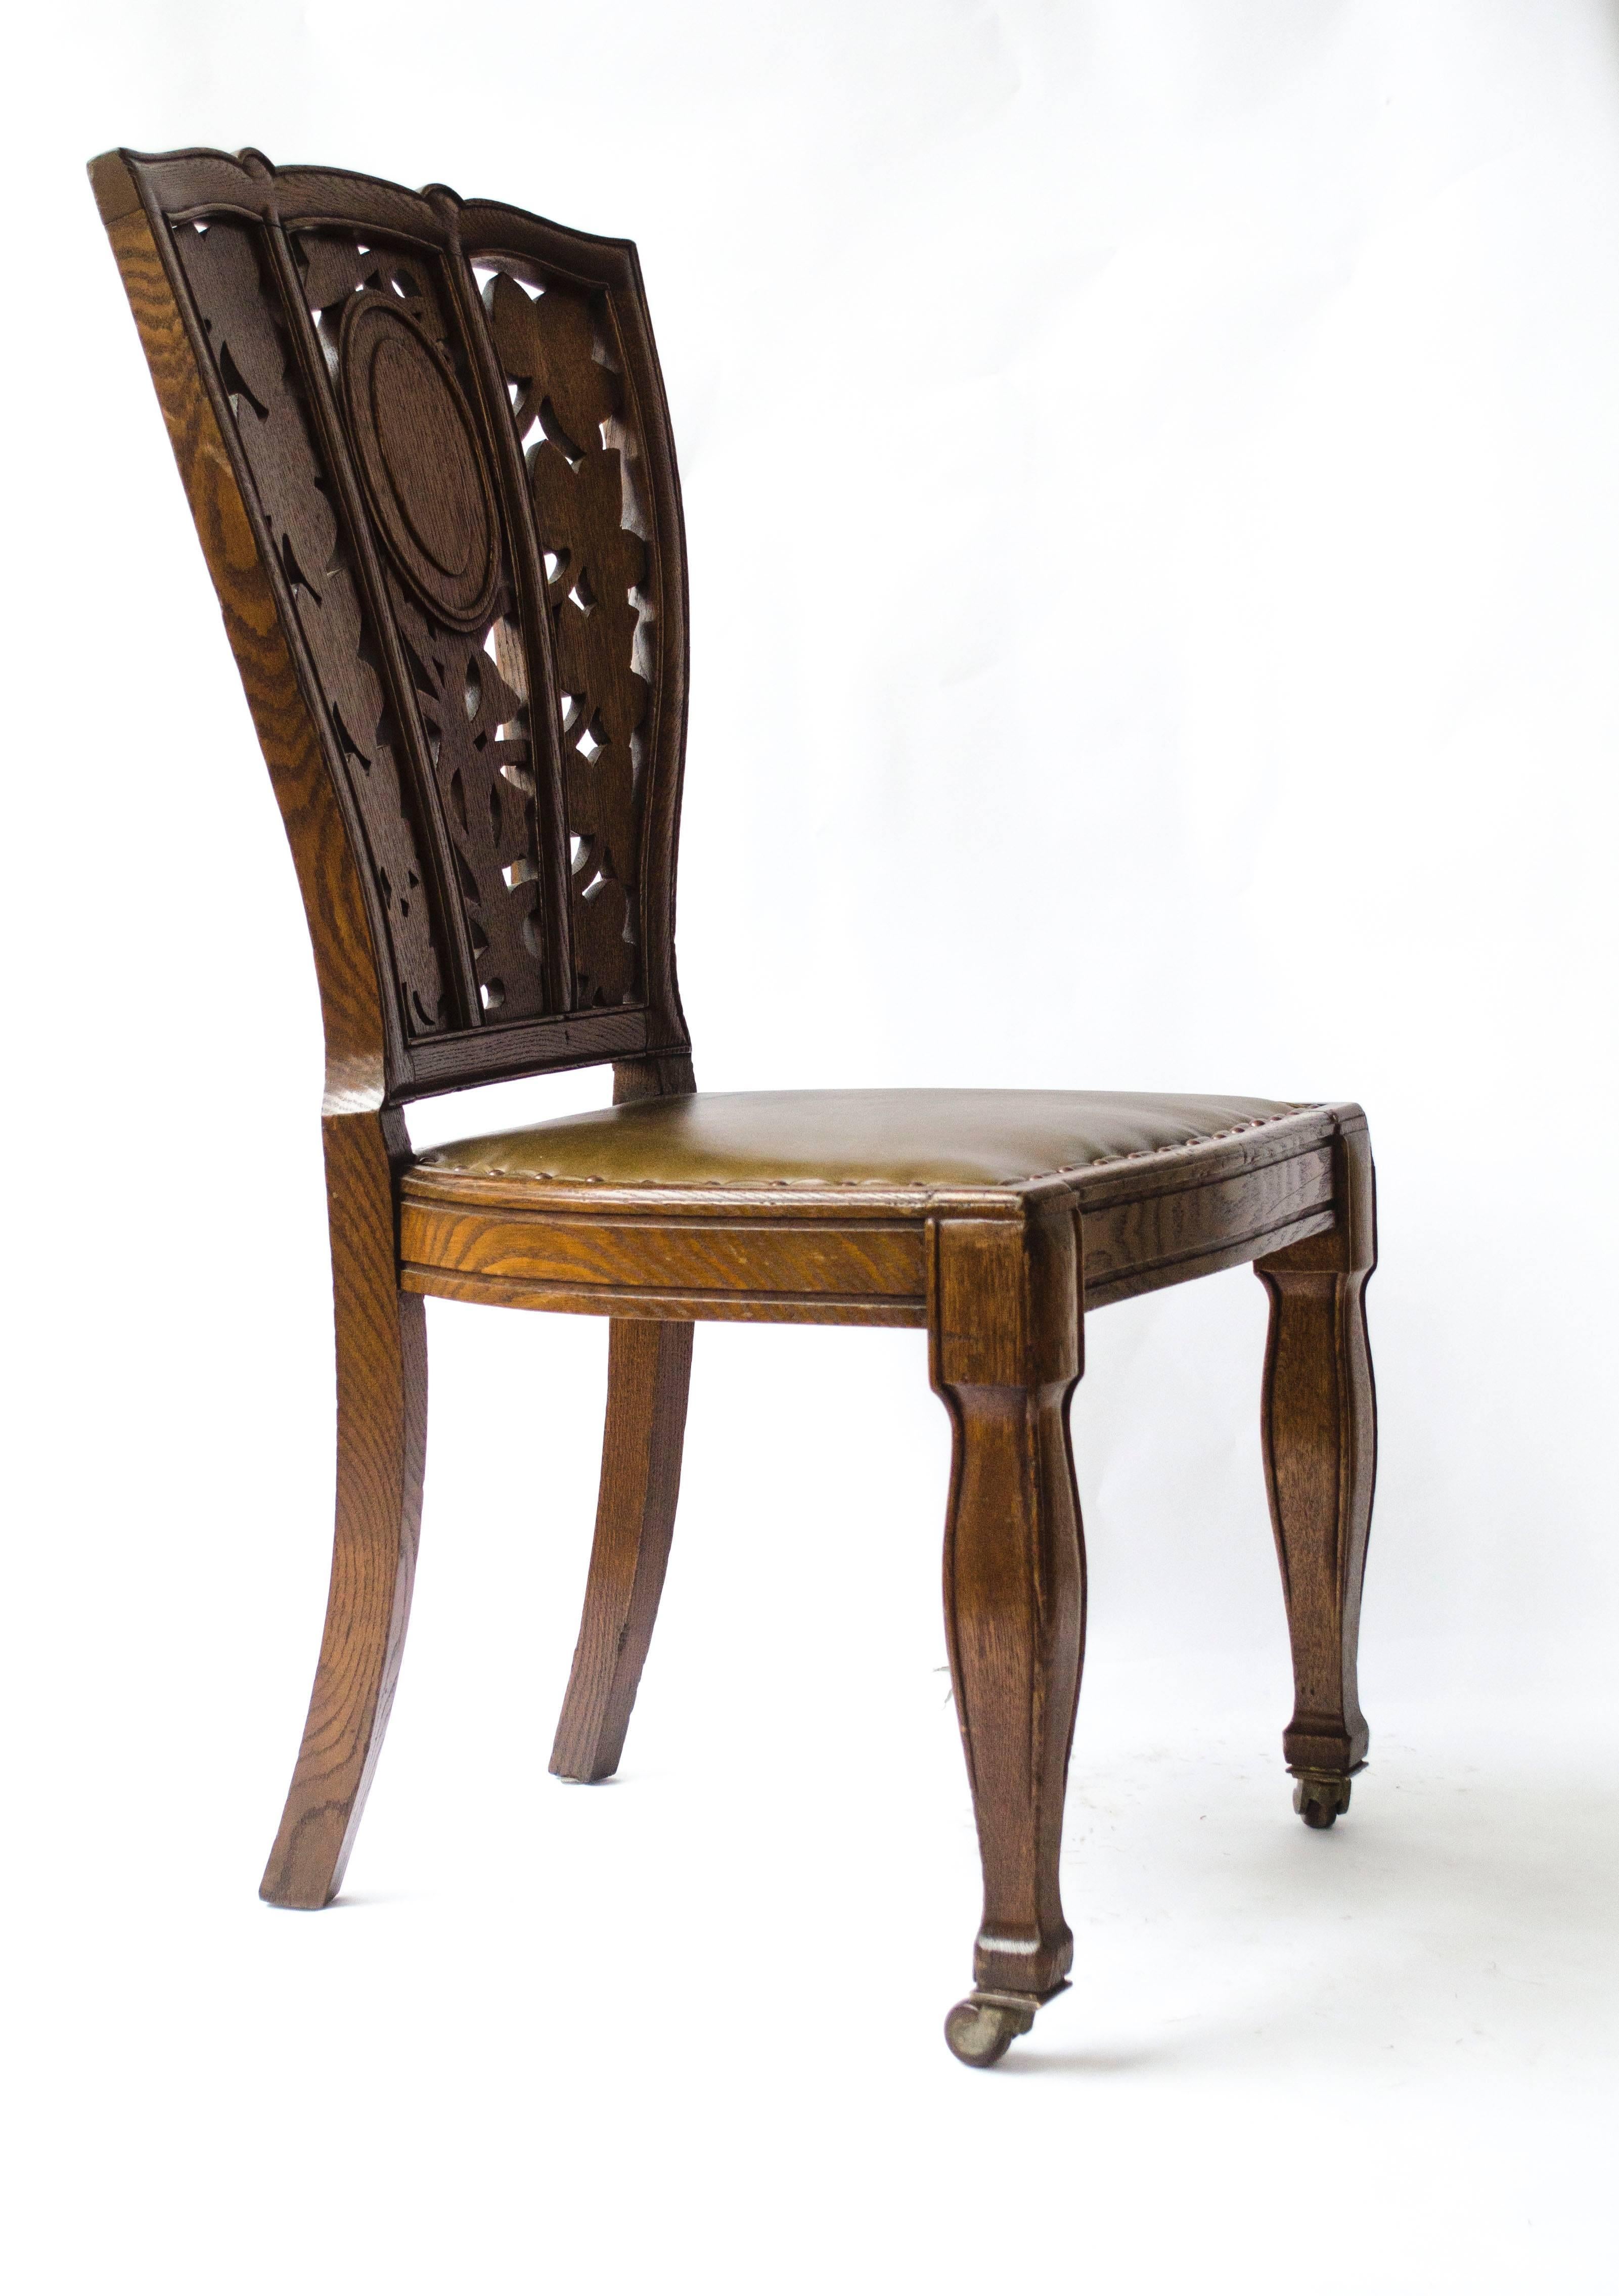 Arthur Heygate Mackmurdo (1851-1942), une très importante chaise en chêne, avec un dossier floral Art Nouveau.
L'influence de Mackmurdo en Europe est reconnue comme ayant produit les premiers exemples d'Art nouveau, notamment dans le style d'un